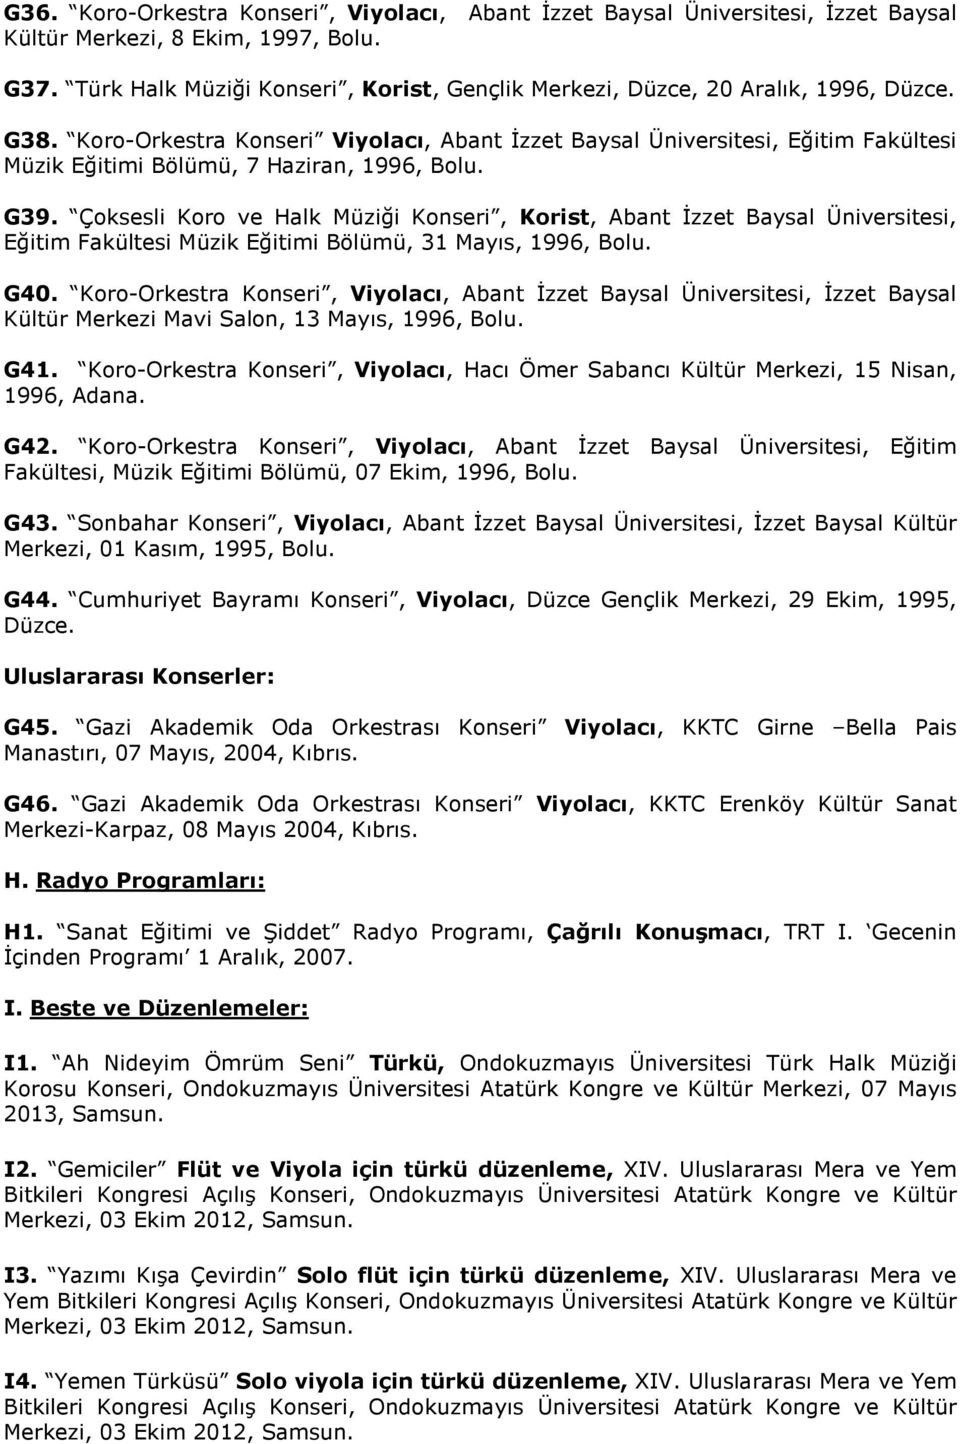 Koro-Orkestra Konseri Viyolacı, Abant İzzet Baysal Üniversitesi, Eğitim Fakültesi Müzik Eğitimi Bölümü, 7 Haziran, 1996, Bolu. G39.